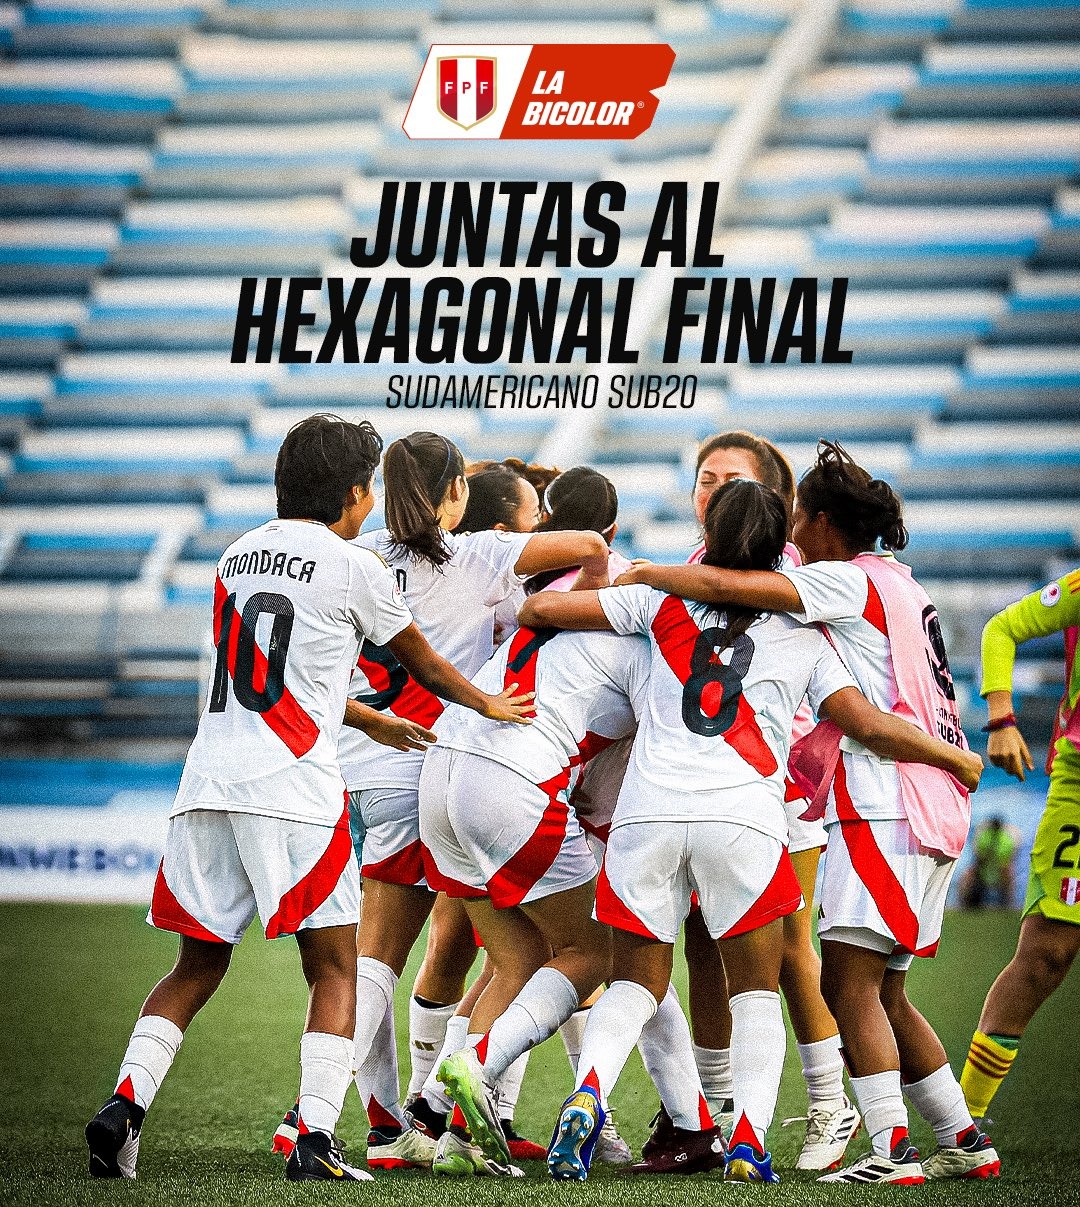 Perú al hexagonal final del Sudamericano Femenino Sub-20. | Fuente: @SeleccionPeru